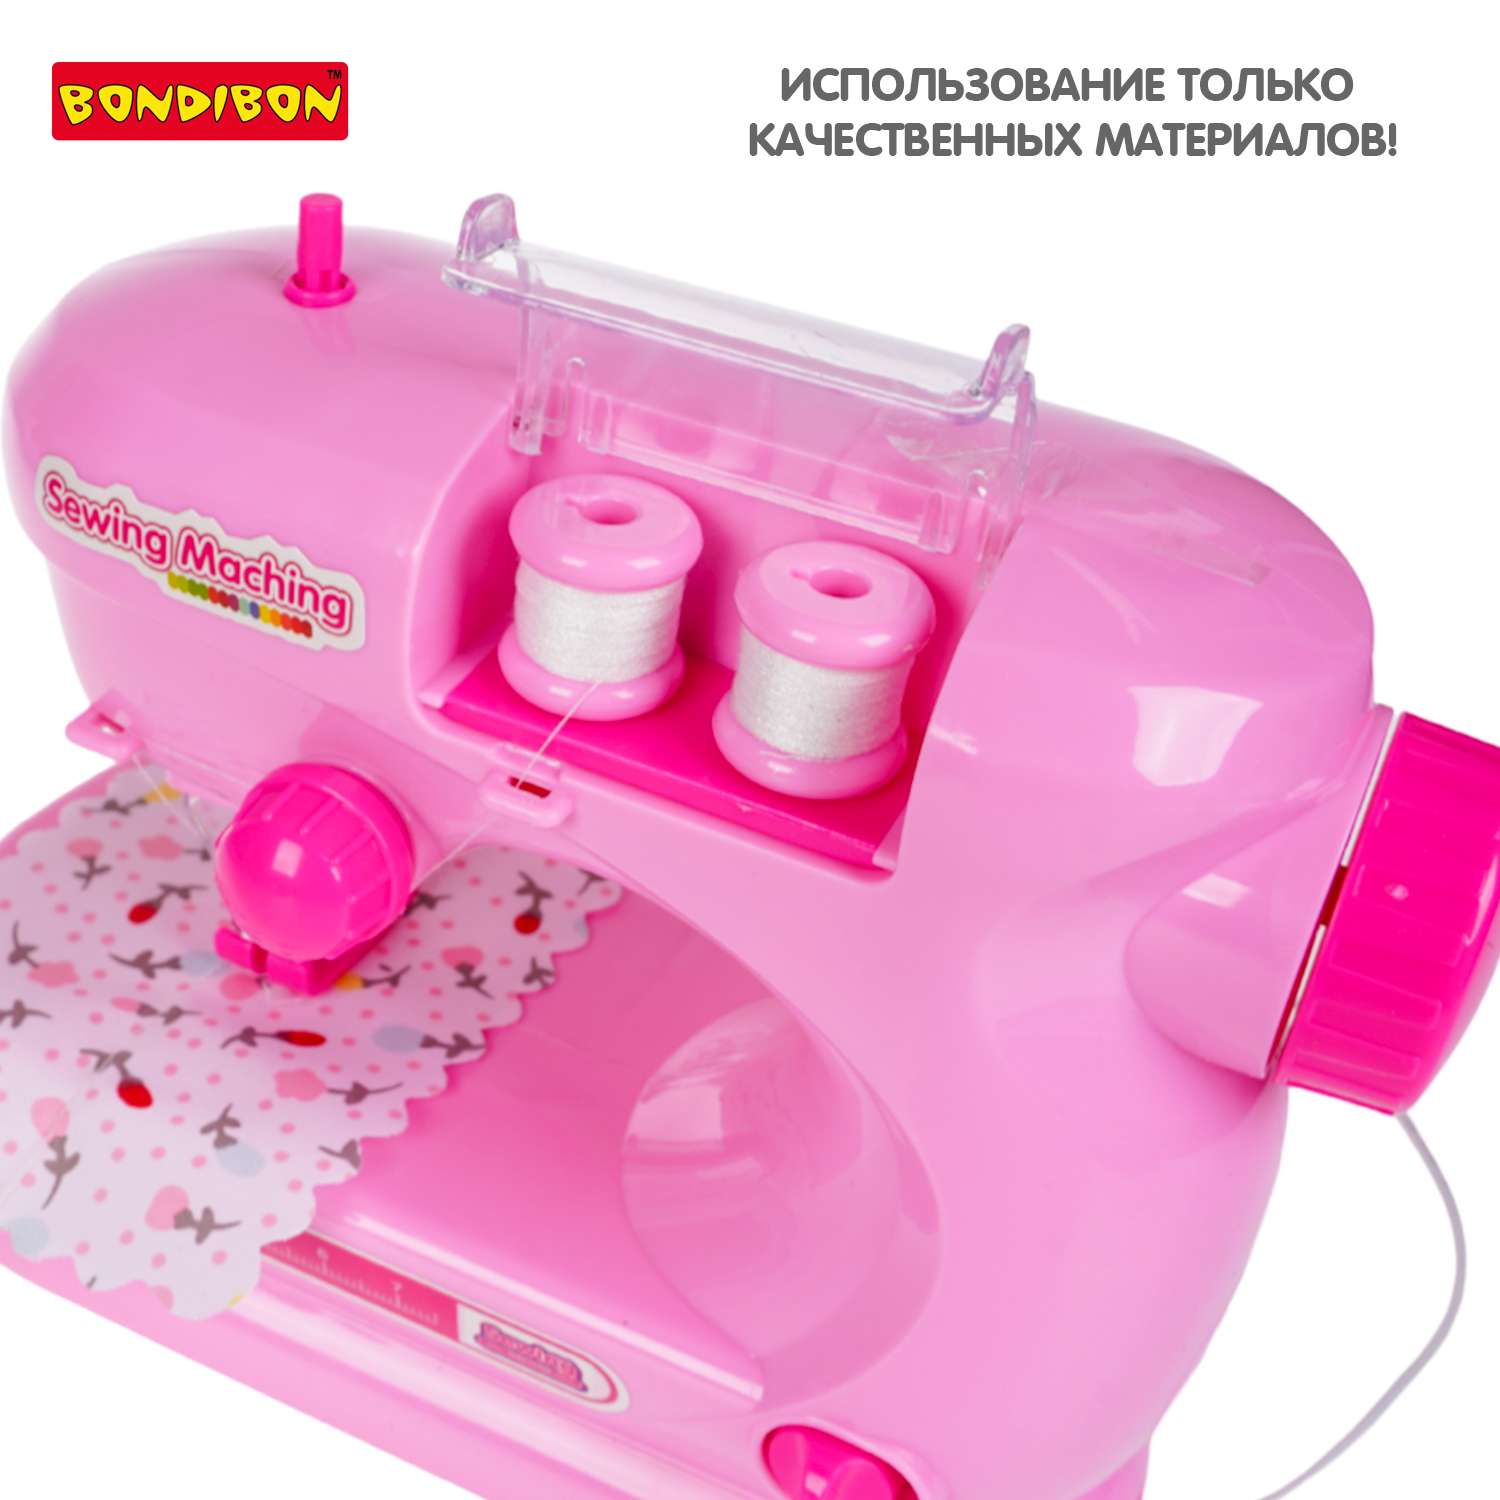 Игровой набор BONDIBON Я Умею Шить! Швейная машина со светом и звуком ярко-розового цвета - фото 11